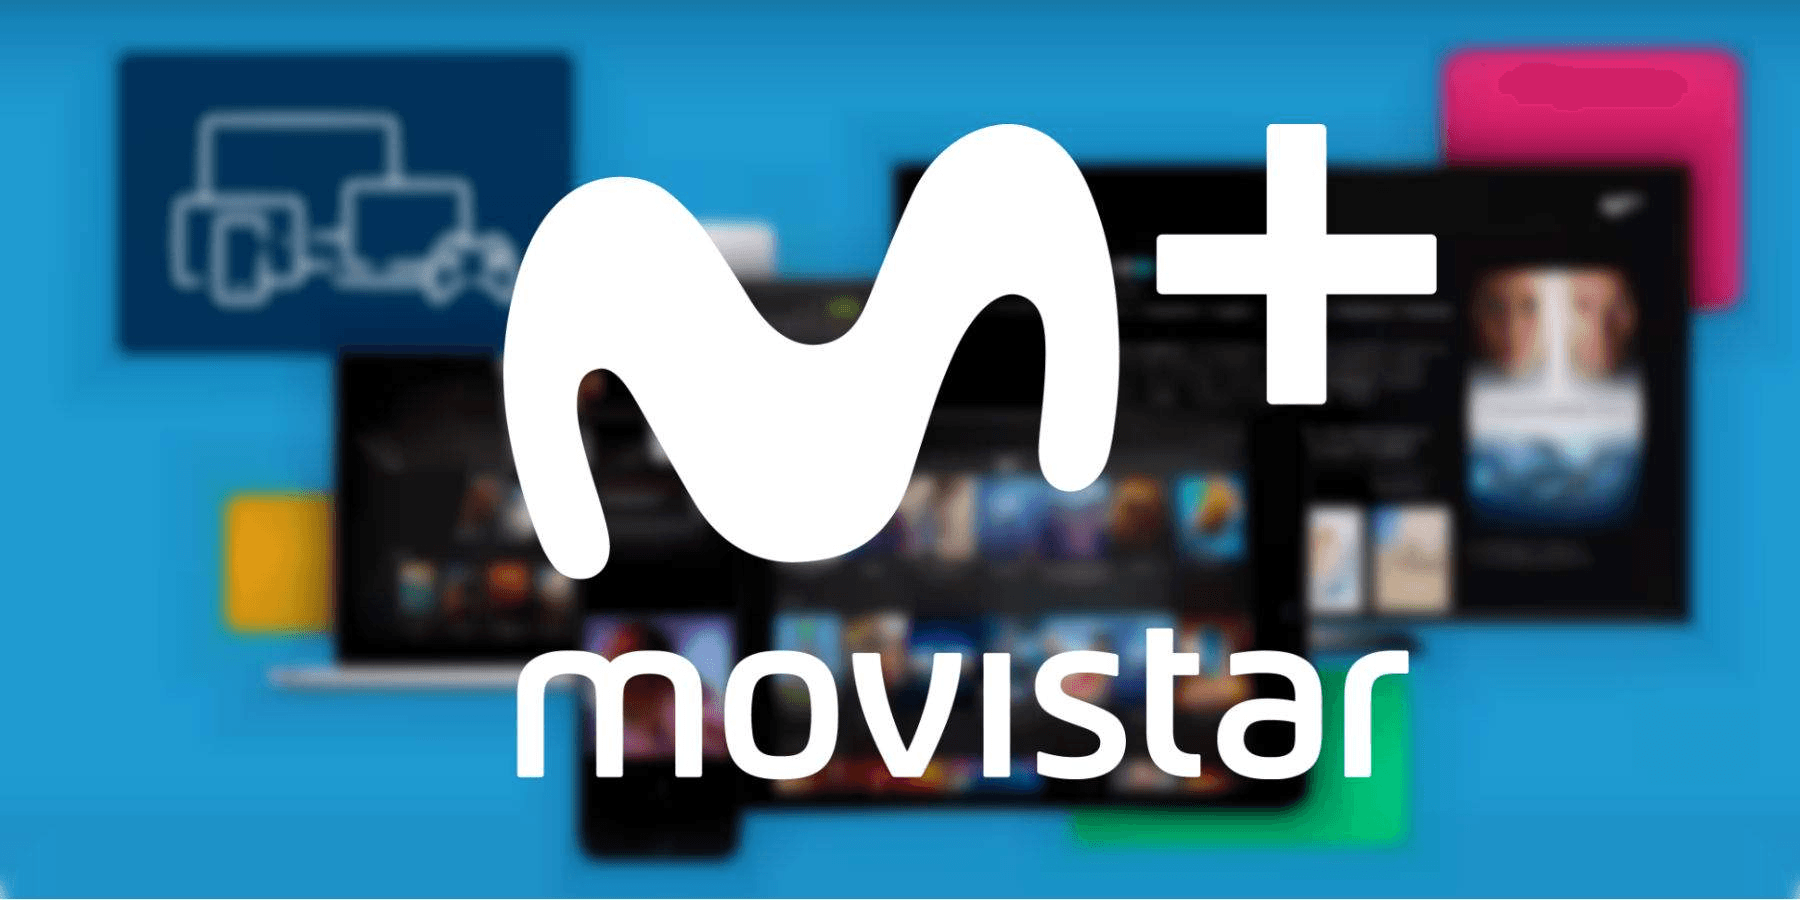 Movistar Tv: recibe un sms al contratarlo para la confirmación